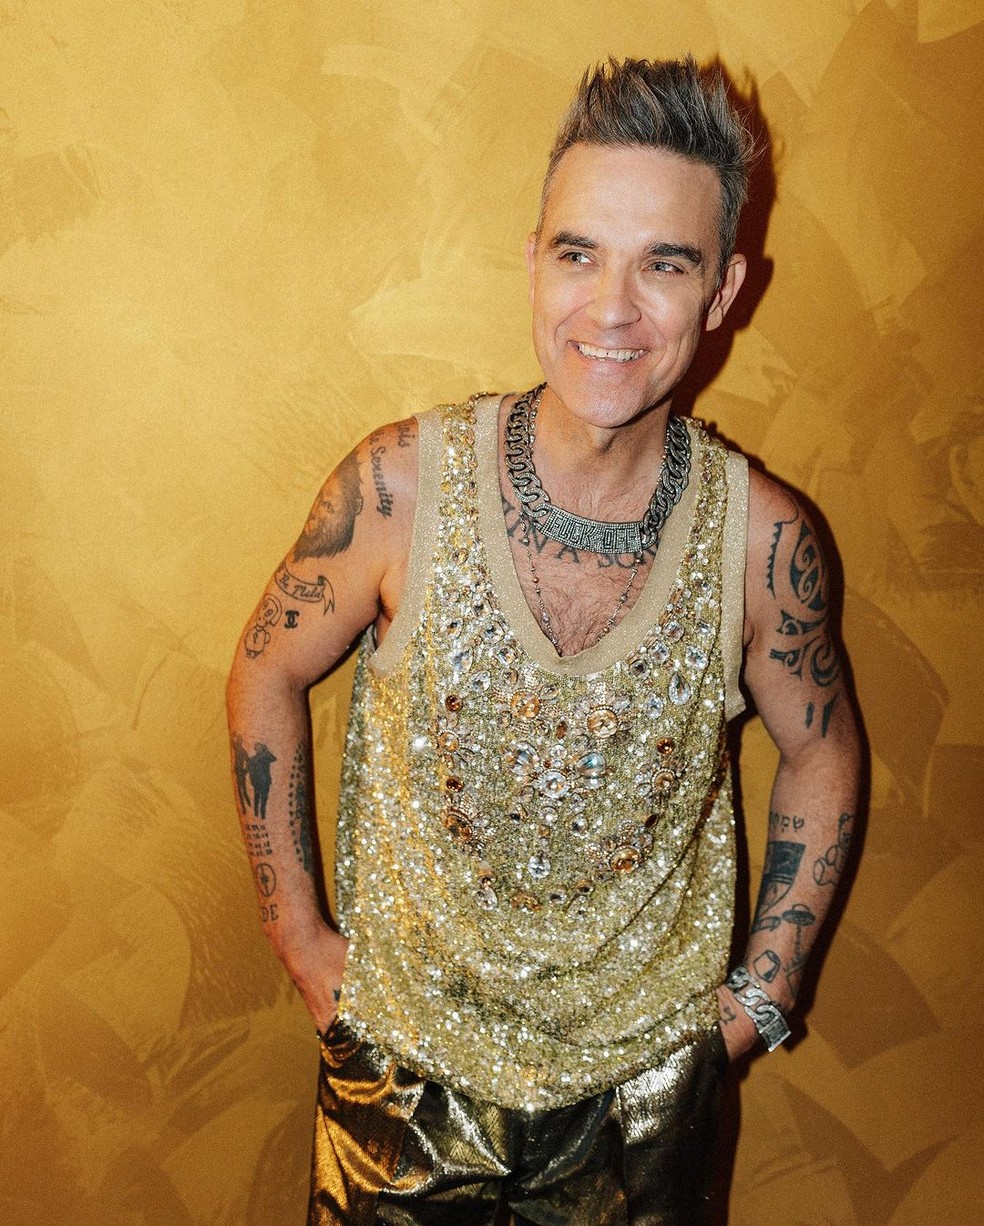 Robbie Williams apresentou mudanças significativas em sua aparência após perder peso com um medicamento semelhante ao Ozempic — Foto: reprodução